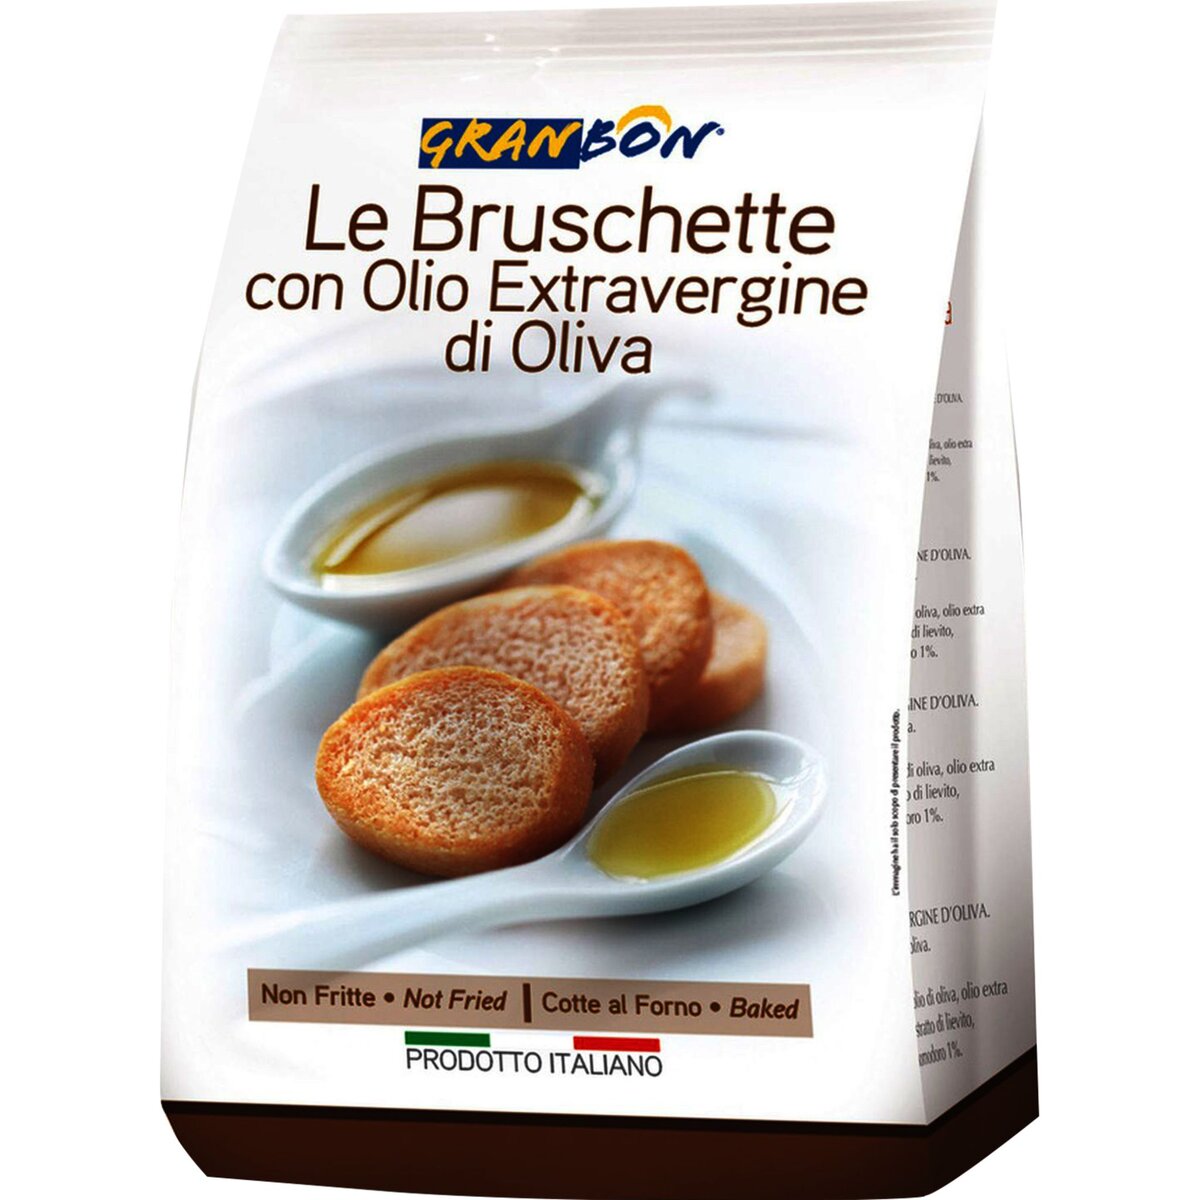 Granbon bruschetta à l'huile d'olive 150g